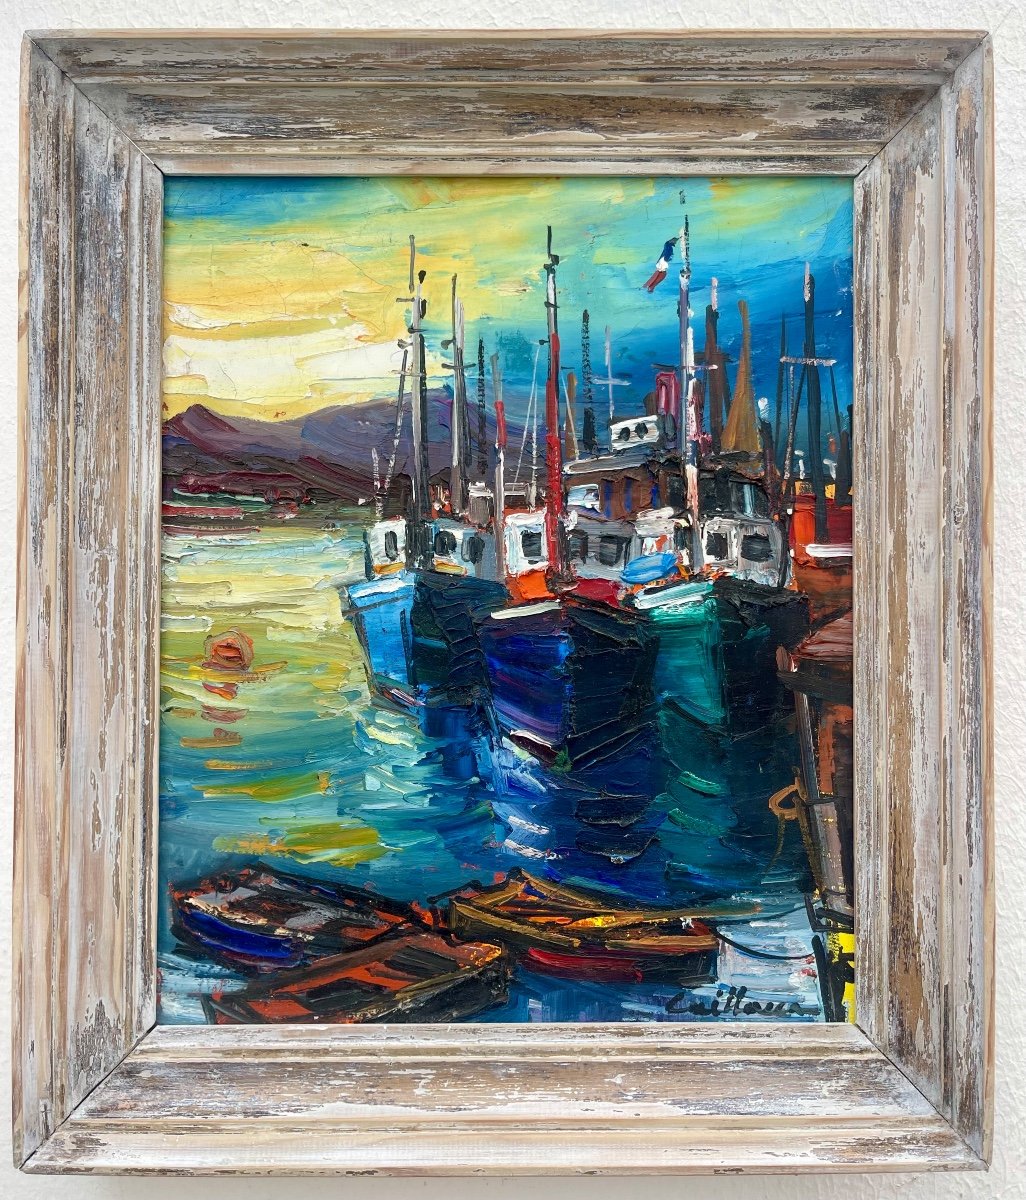 “saint-jean-de-luz - The Port” Rodolphe Caillaux (1904 - 1989)